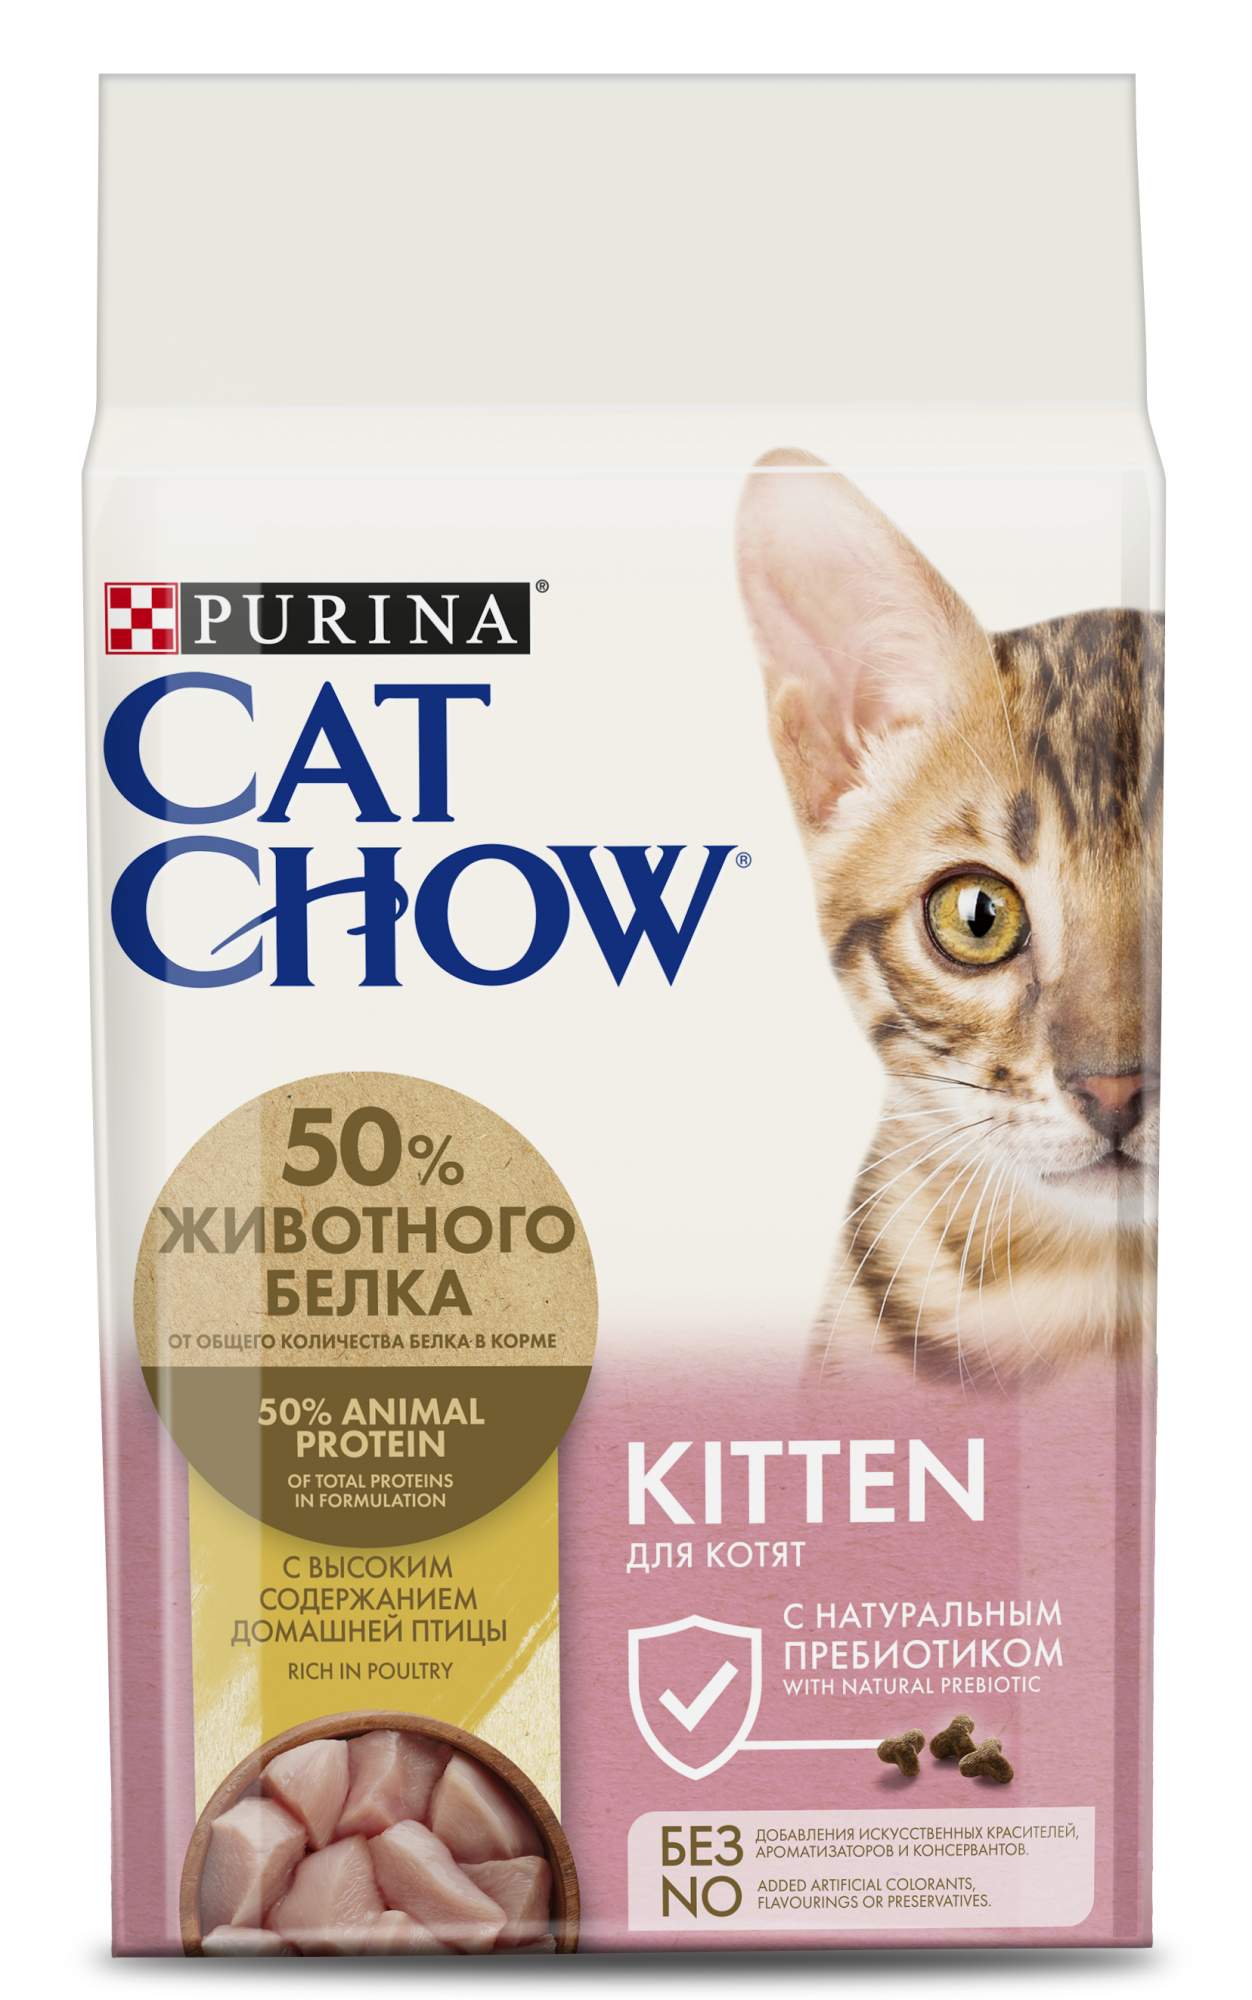 Сухой корм для котят Cat Chow Kitten, домашняя птица, 1,5кг